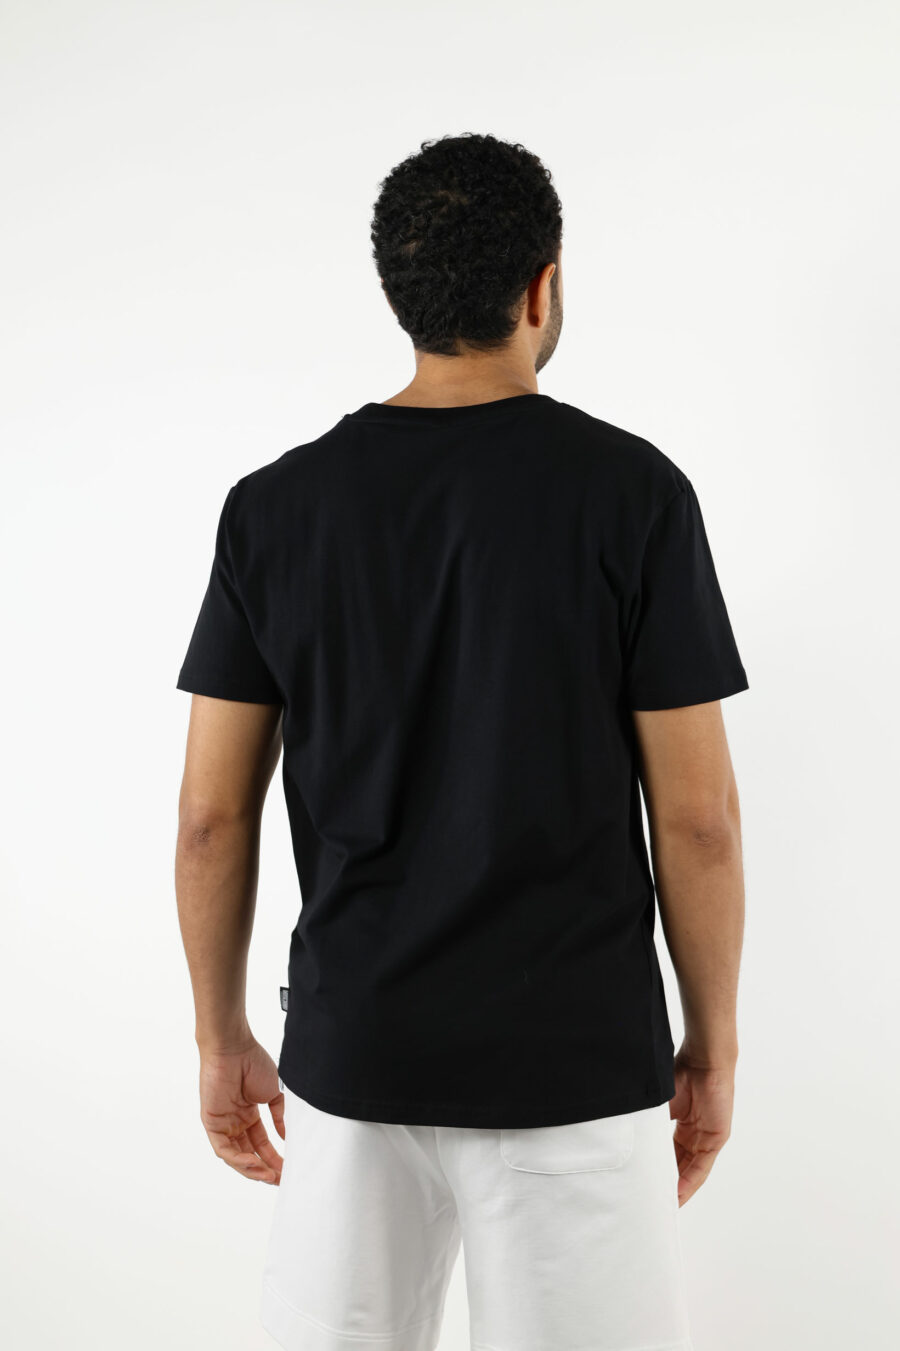 T-shirt schwarz mit Mini-Bär "underbear" in weißem Gummi - 111016